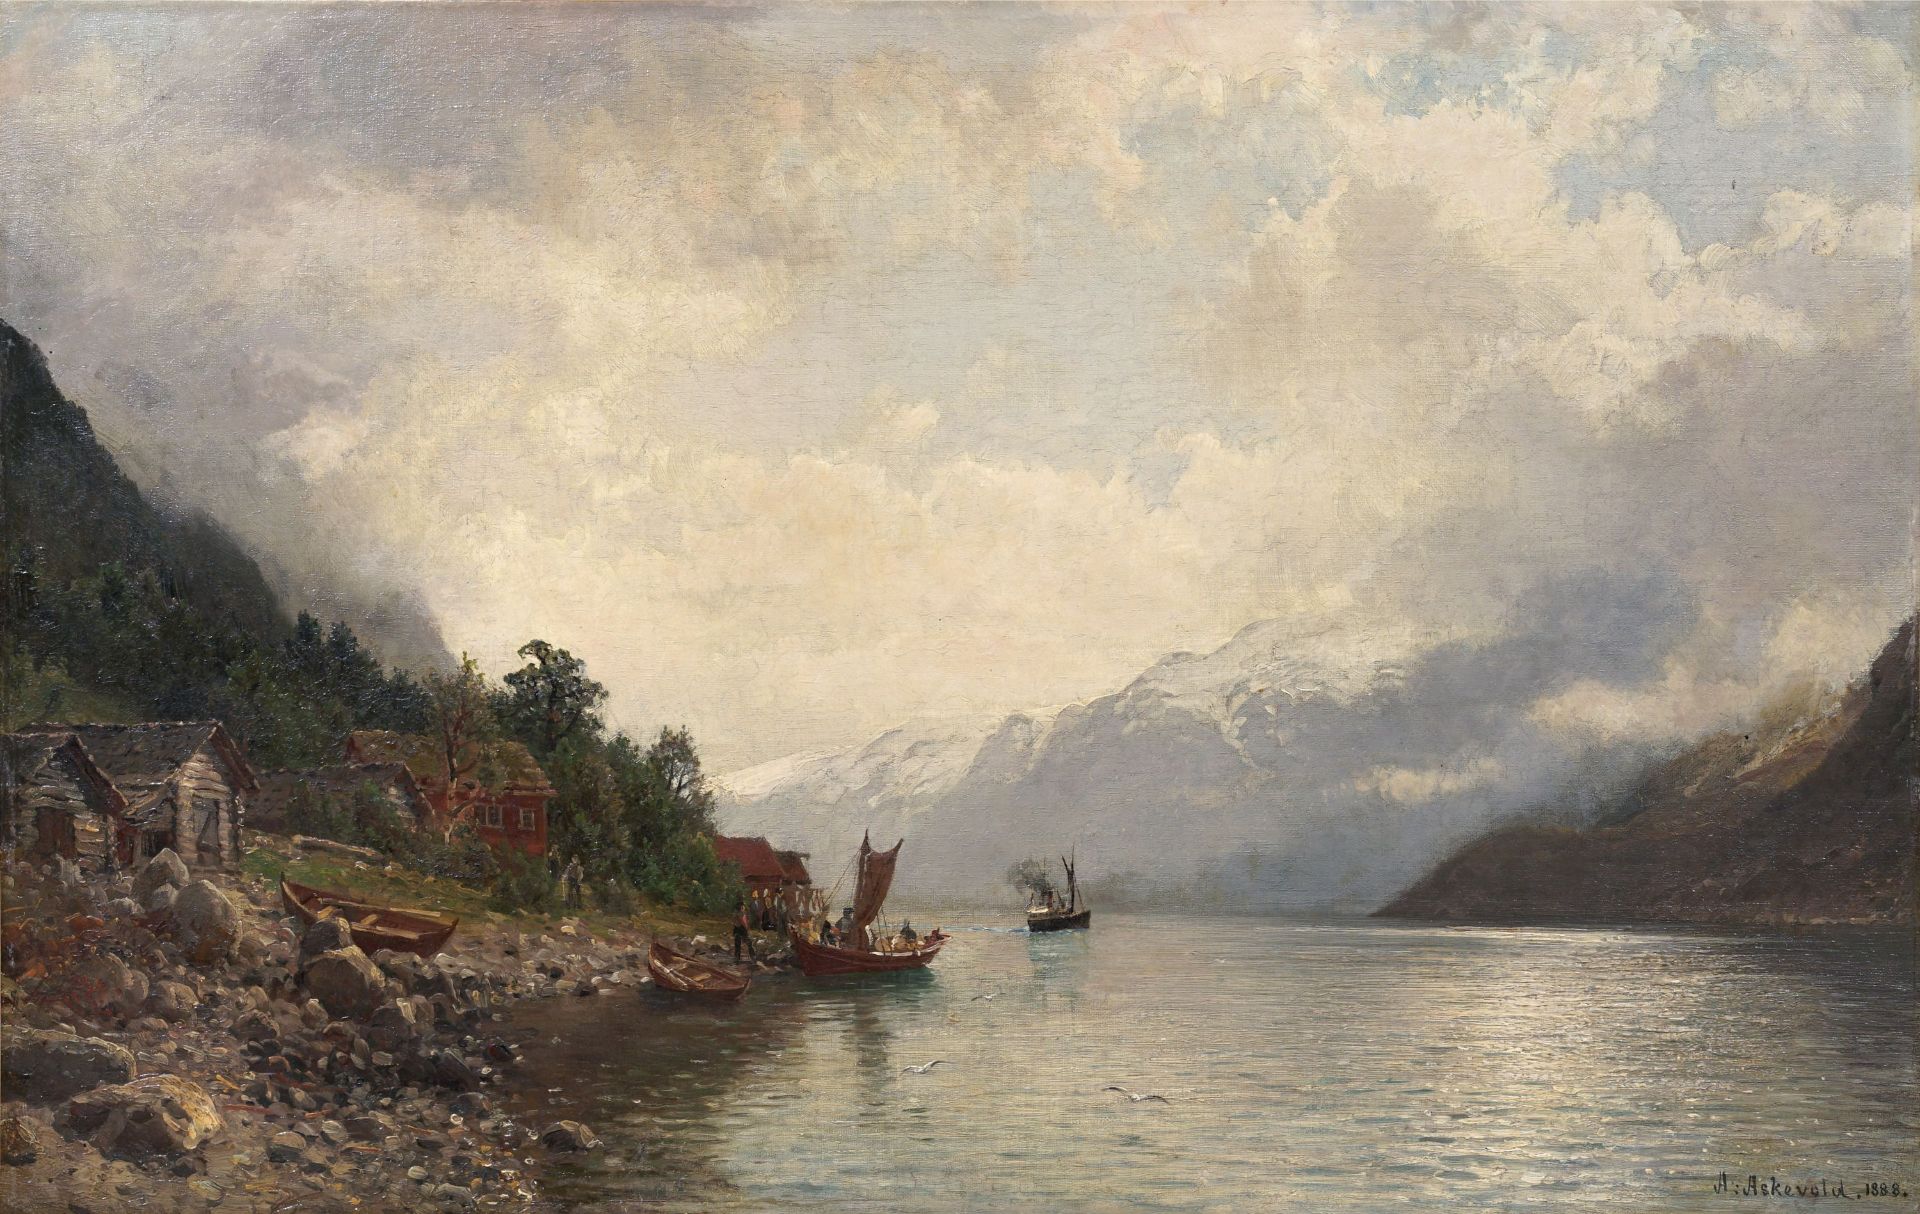 Anders Monsen Askevold "Der Geyerfjord" (Geirangerfjord). 1888.